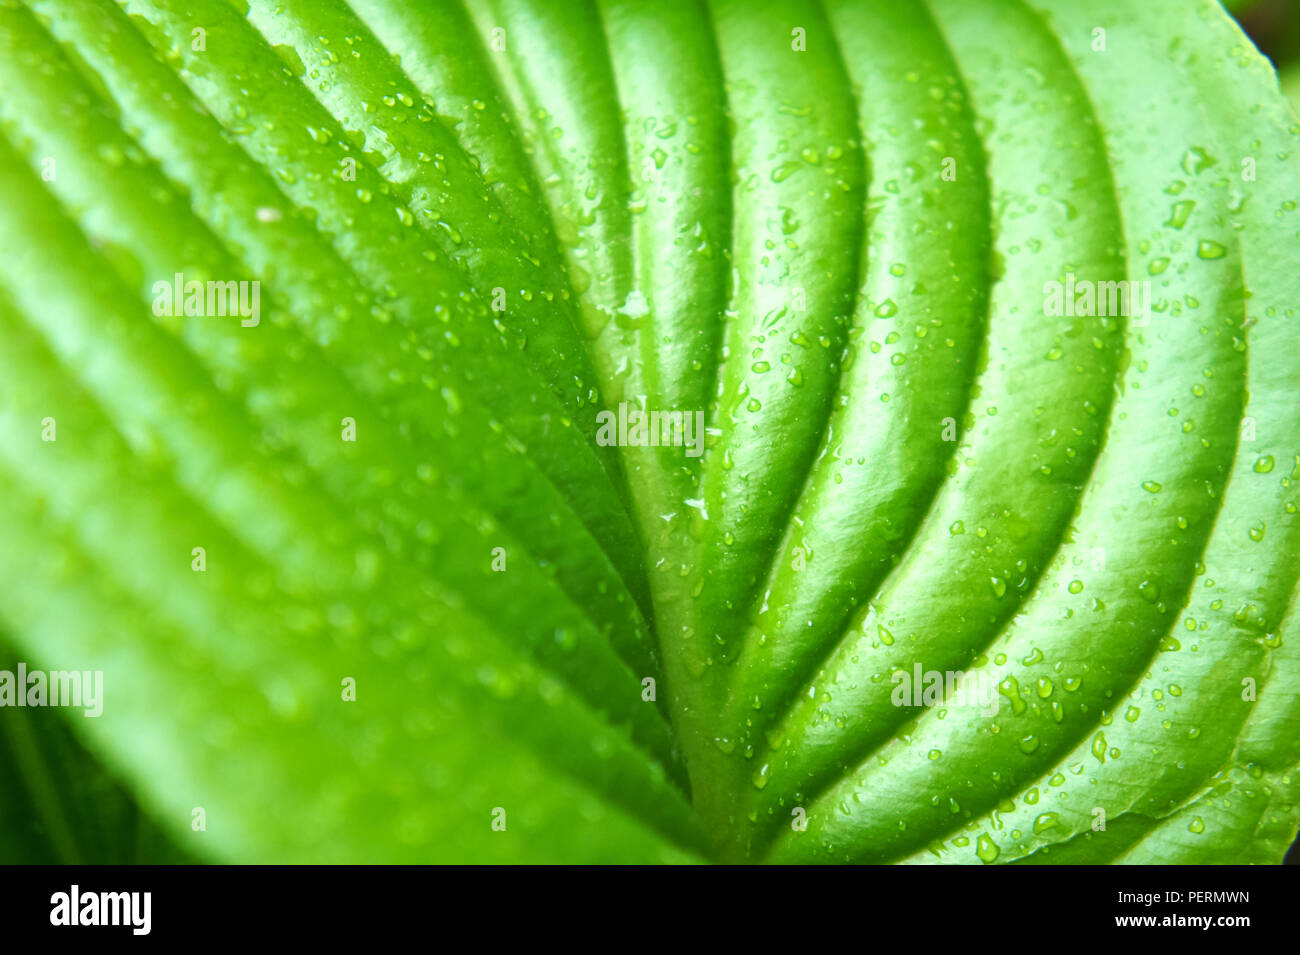 Feuilles vertes tropicales après pluie d'été, grandes feuilles vertes avec des nervures Banque D'Images